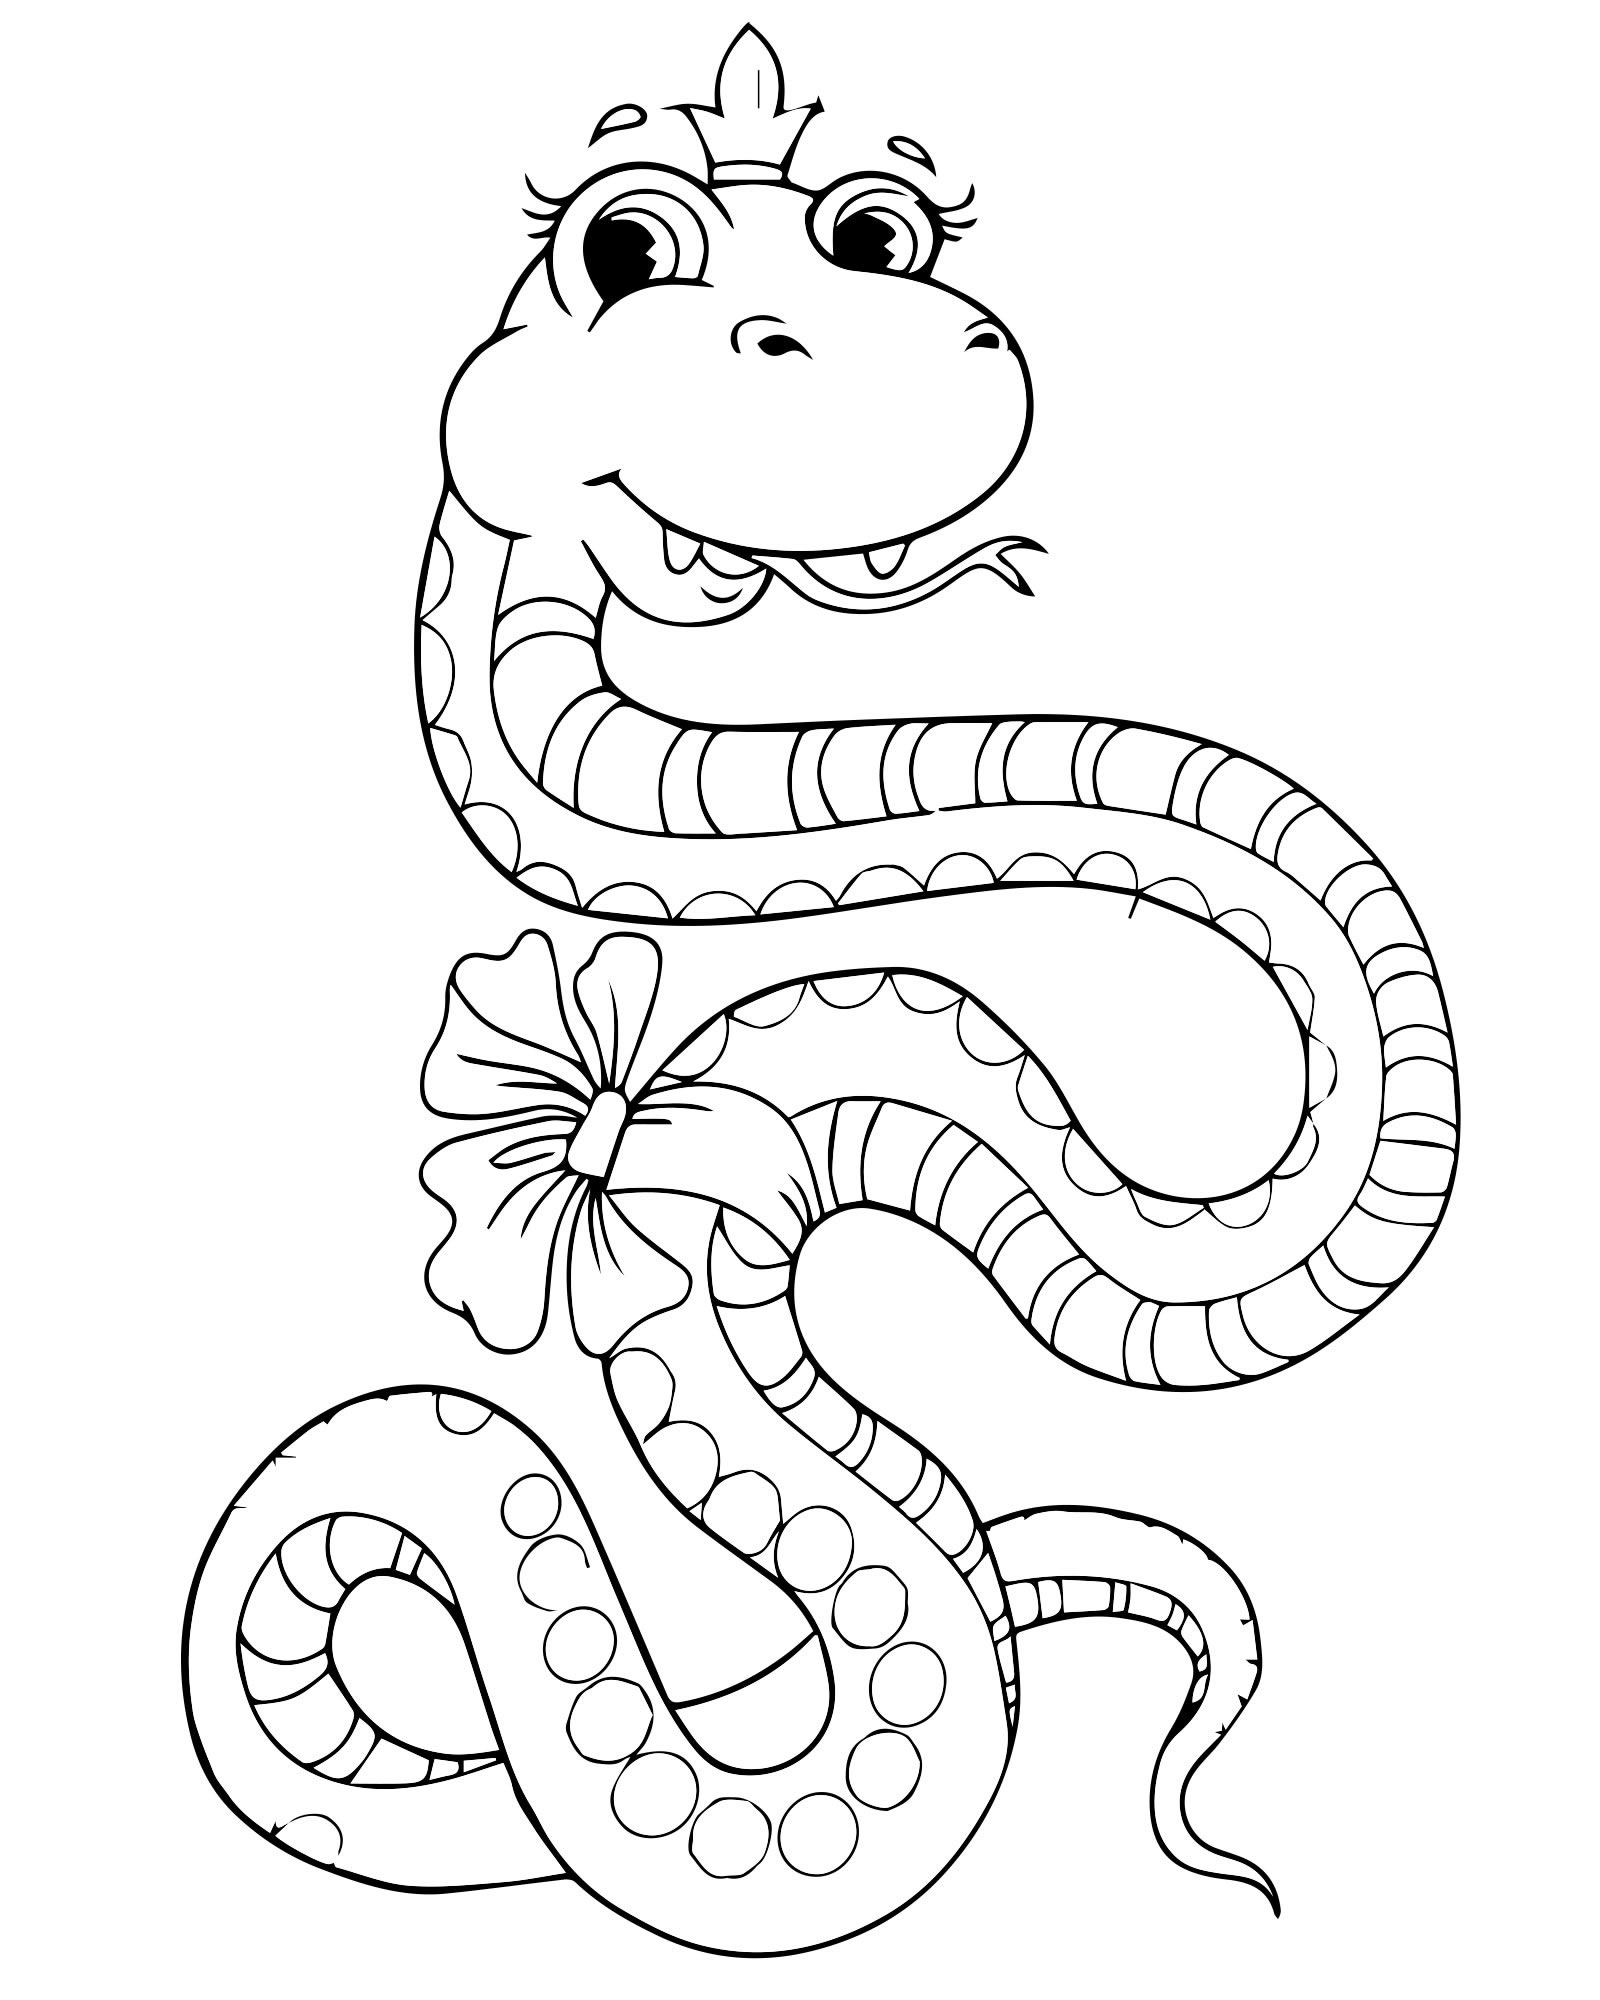 Раскраски змей распечатать. Змея раскраска для детей. Раскраска змеи для детей. Змея рисунок для детей раскраска. Змея расскра.